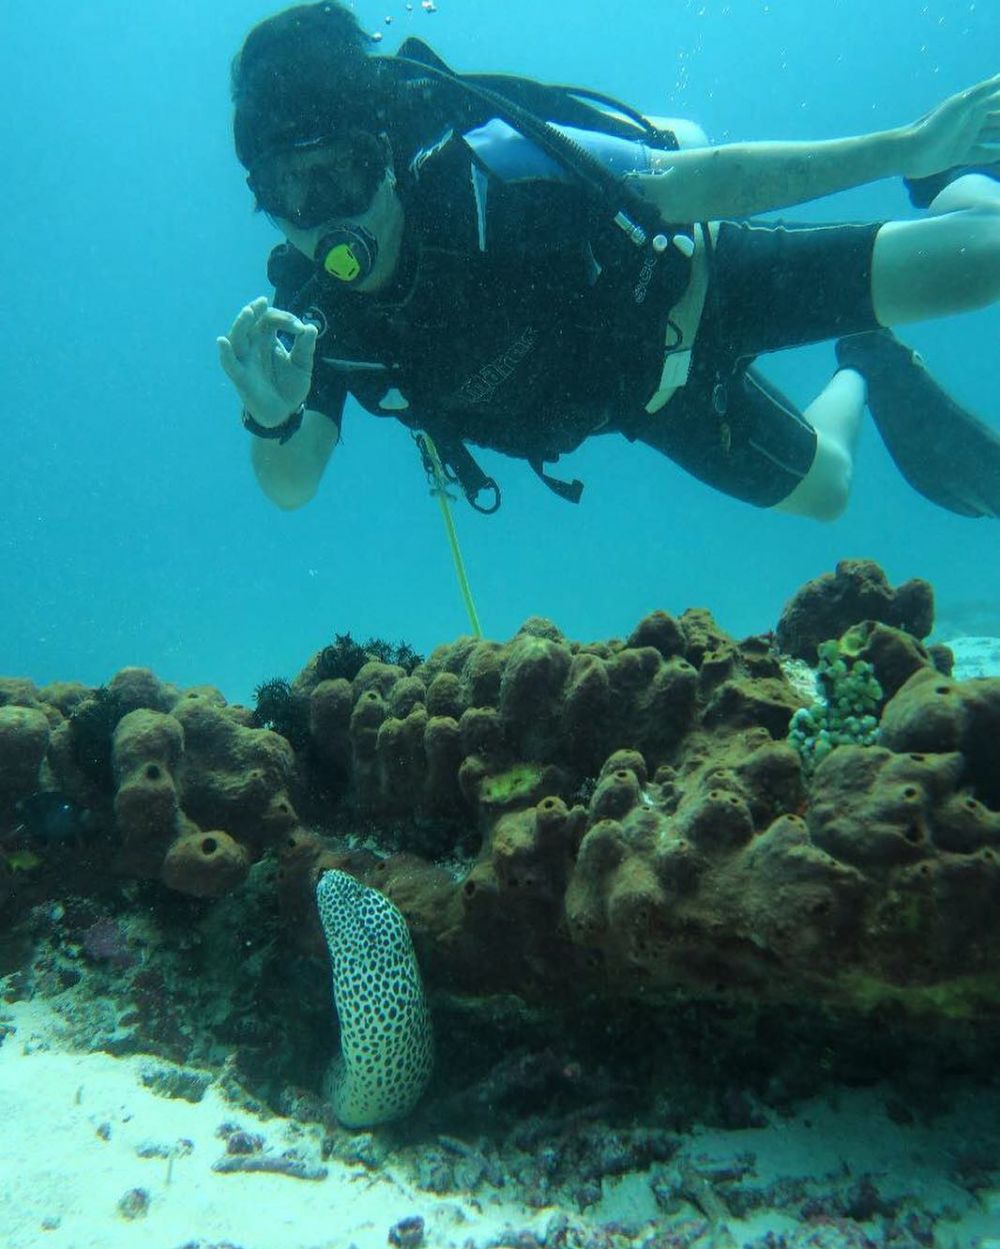 Cerita 7 seleb hobi diving, Hamish Daud menggeluti sejak kecil